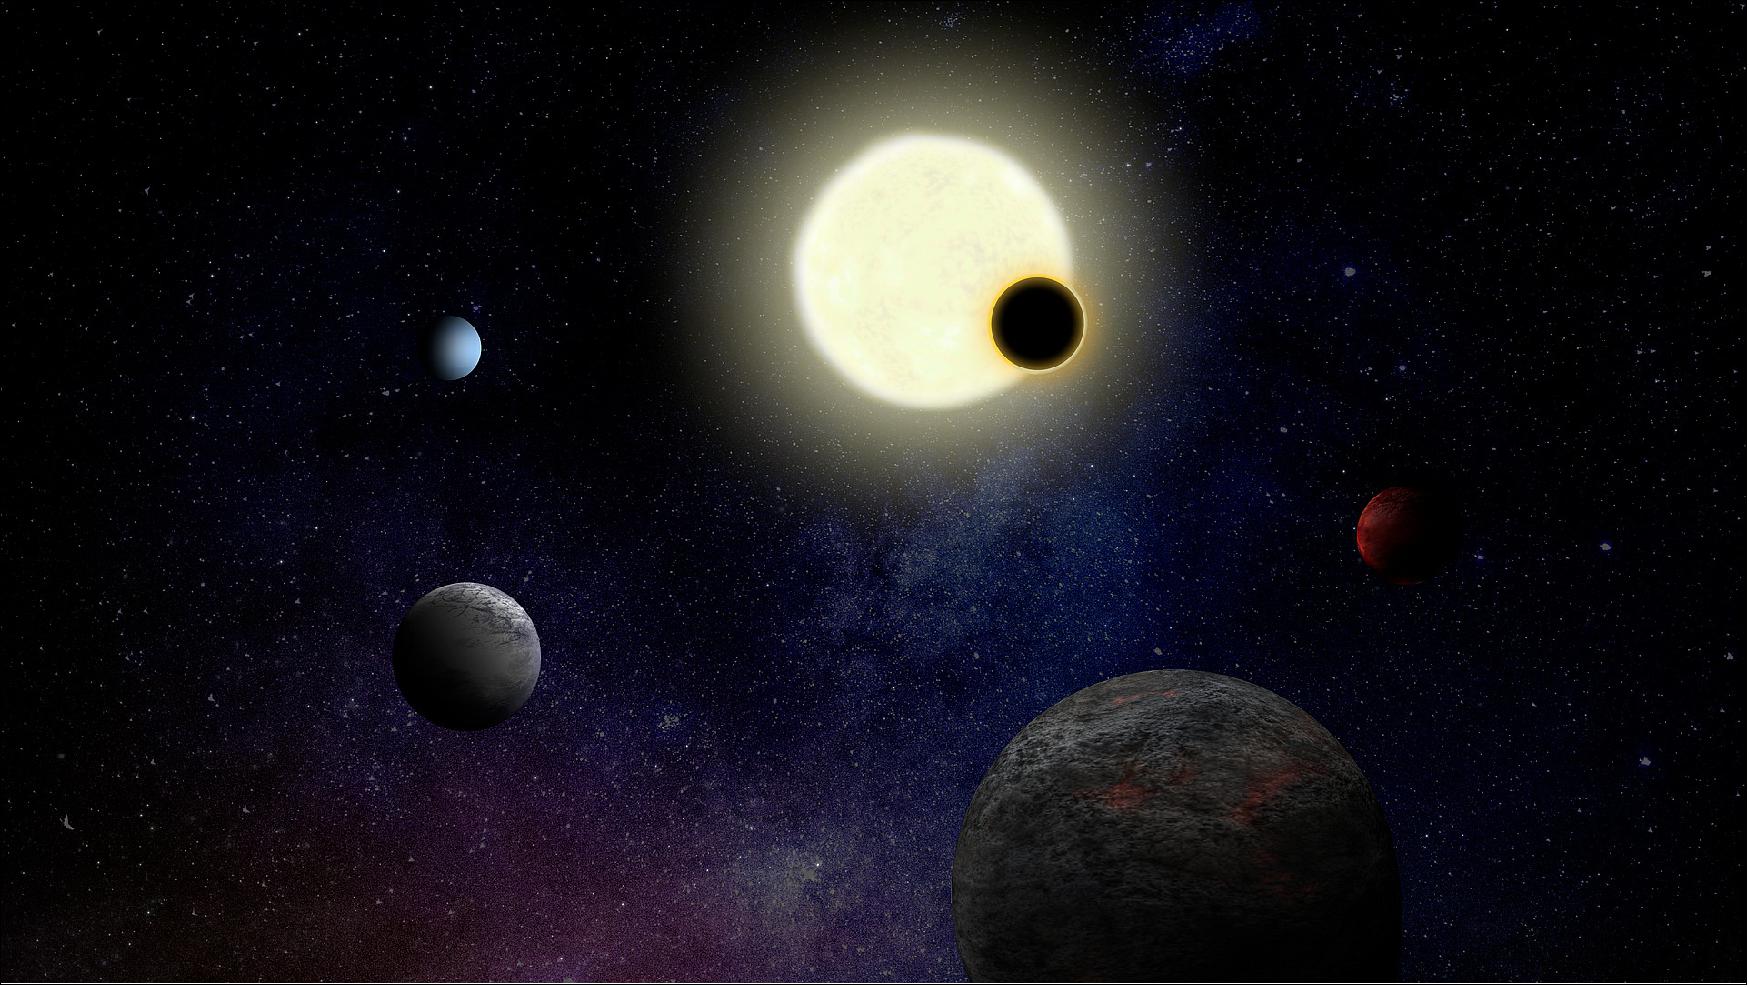 Figure 5: Artist impression of an exoplanet system (image credit: ESA)